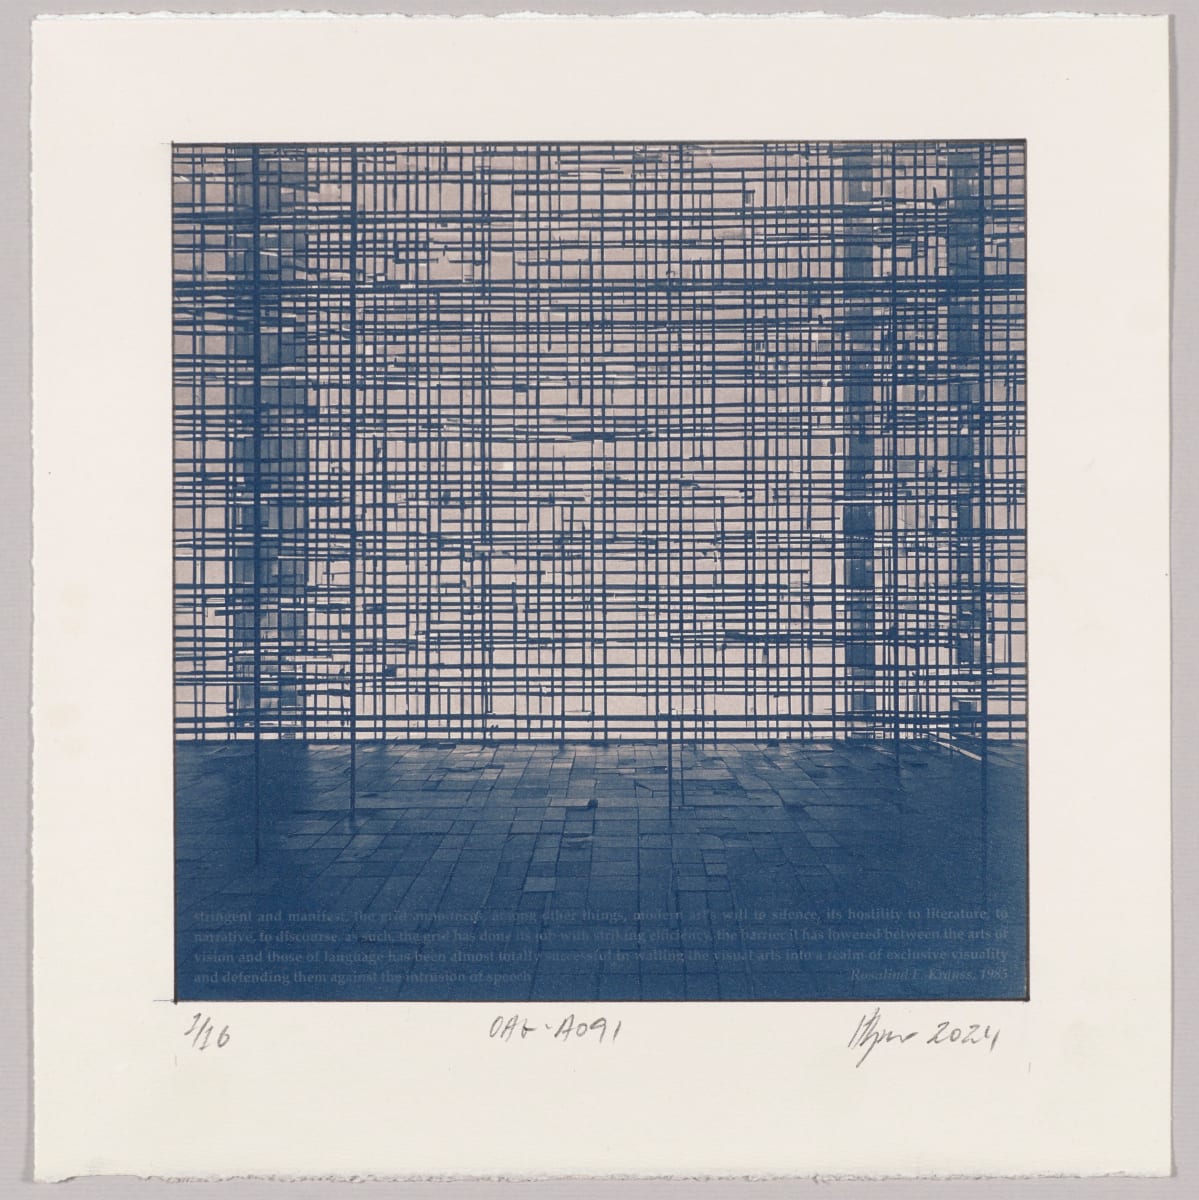 Originality of the avant-garde : Grid – #A091 1/16 by Hlynur Helgason 